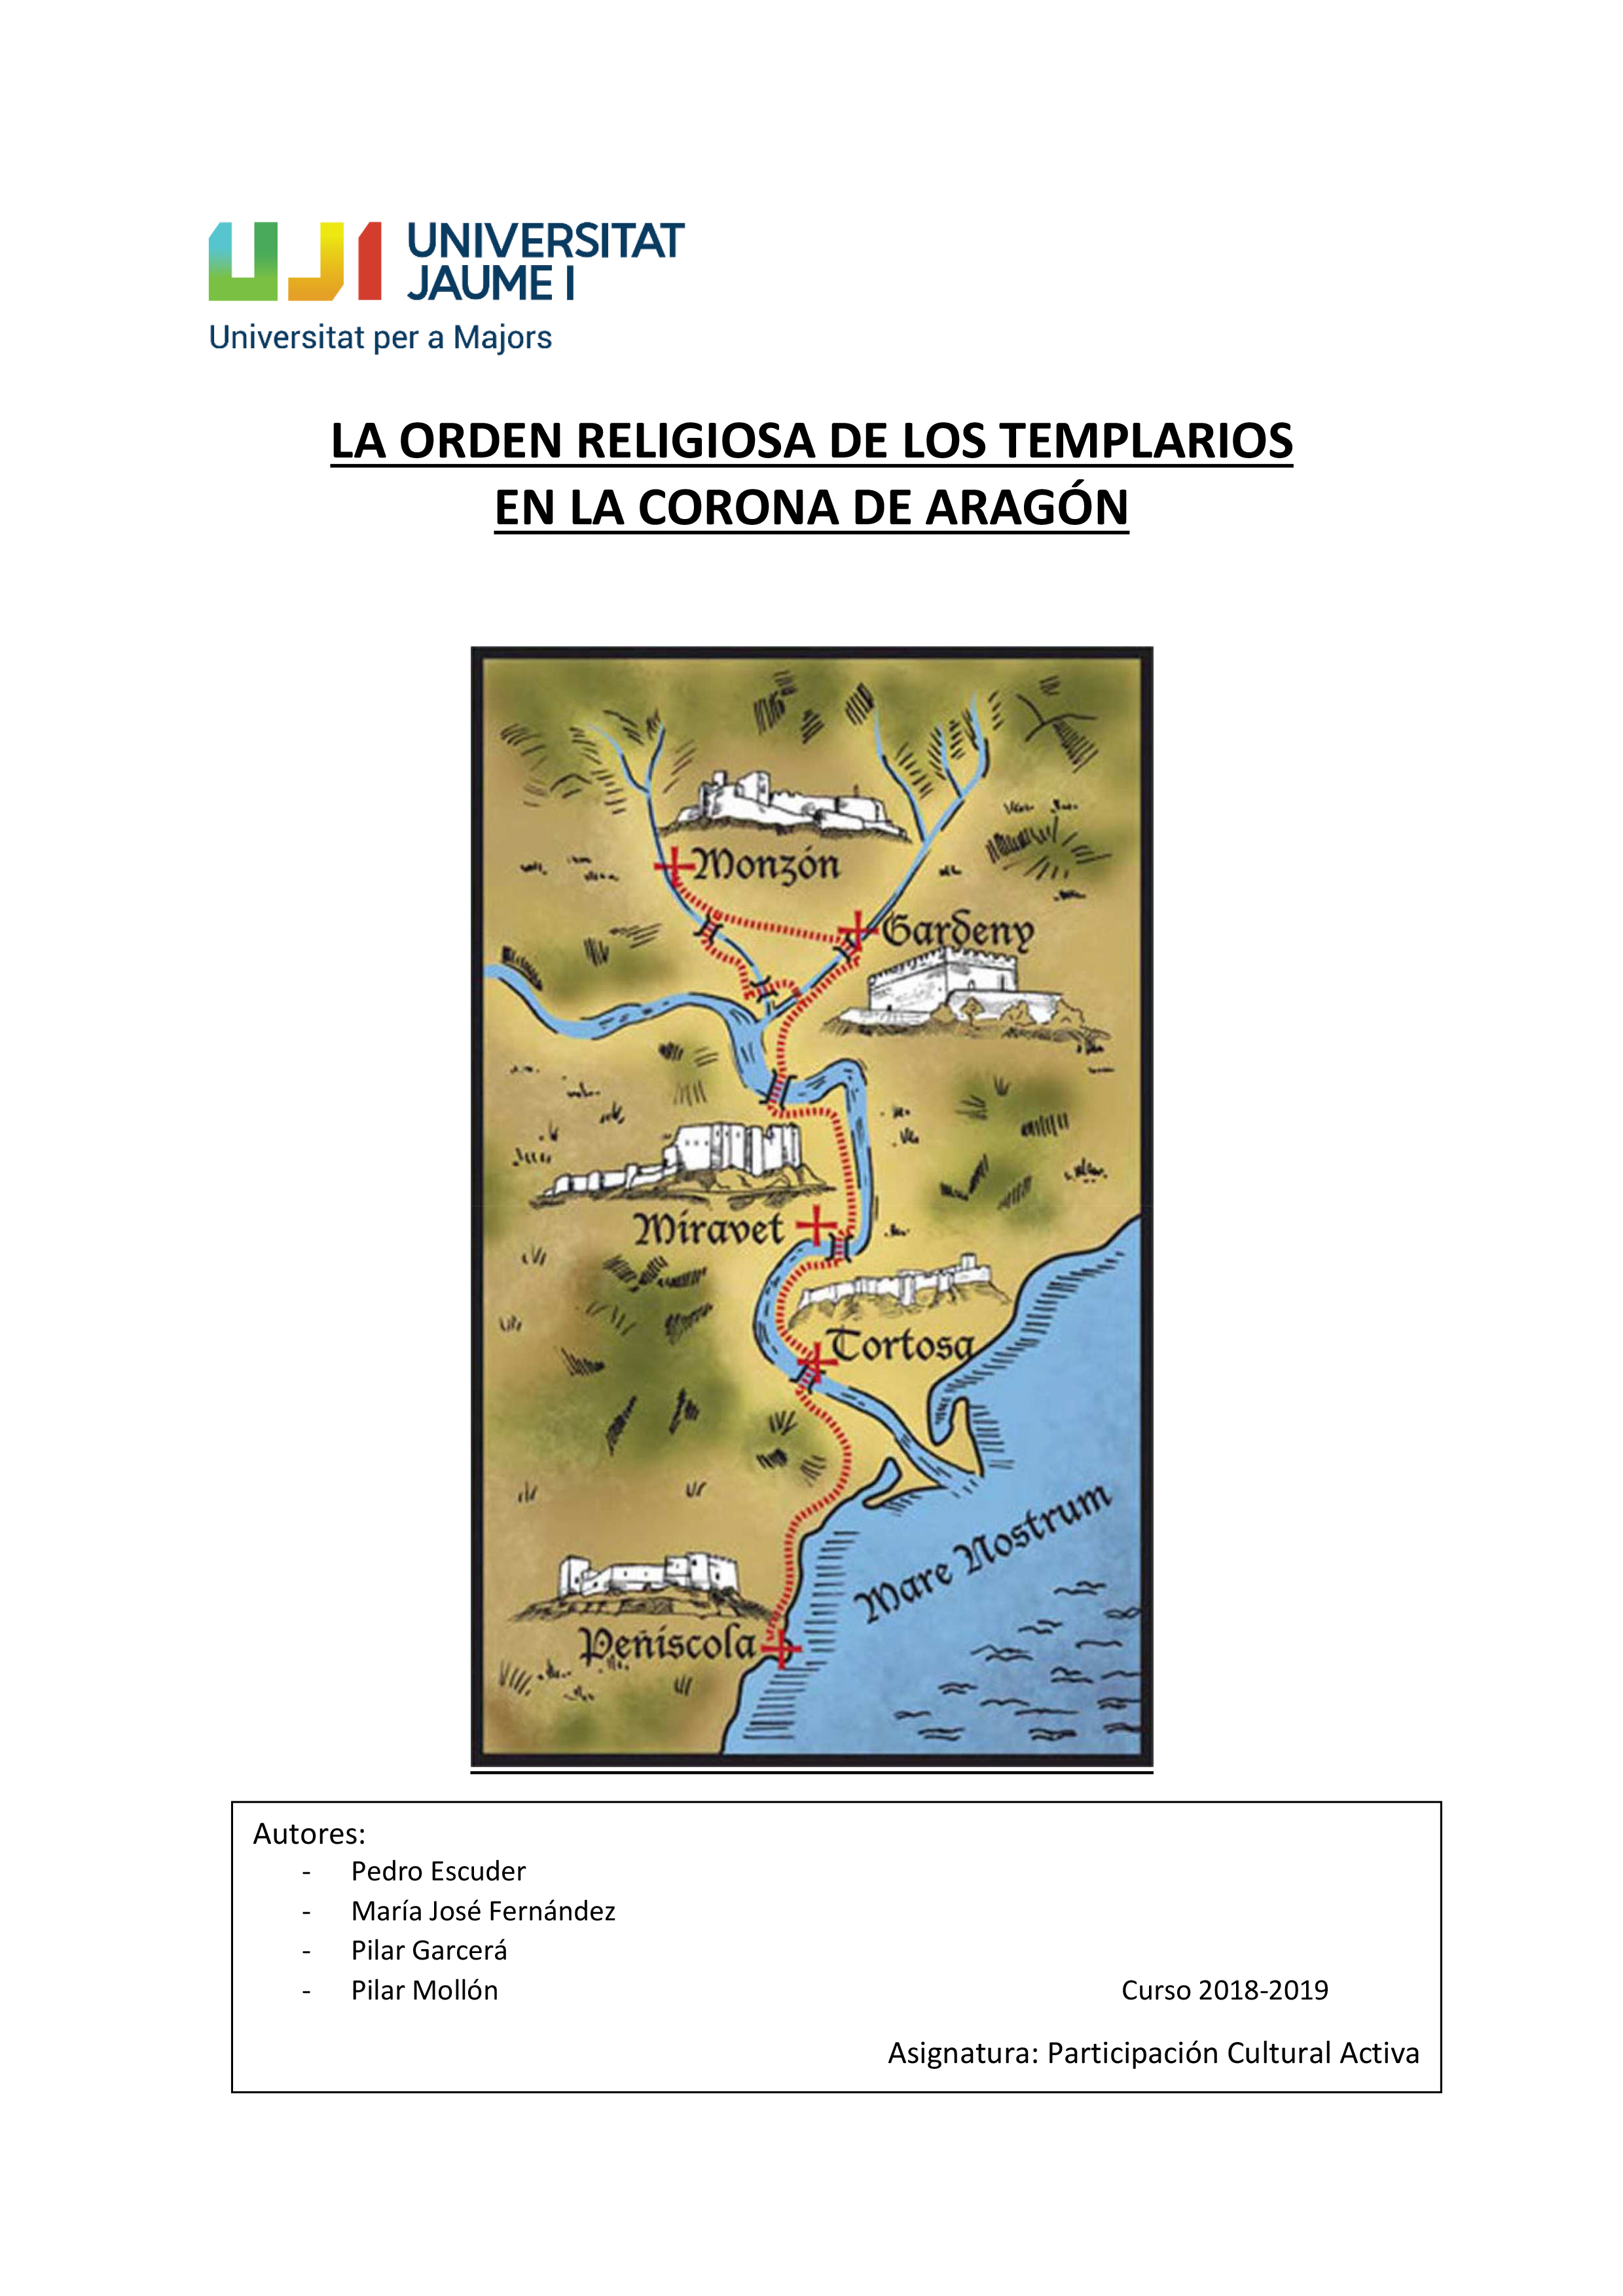 LA-ORDEN-RELIGIOSA-DE-LOS-TEMPLARIOS-EN-LA-CORORNA-DE-ARAGÓN